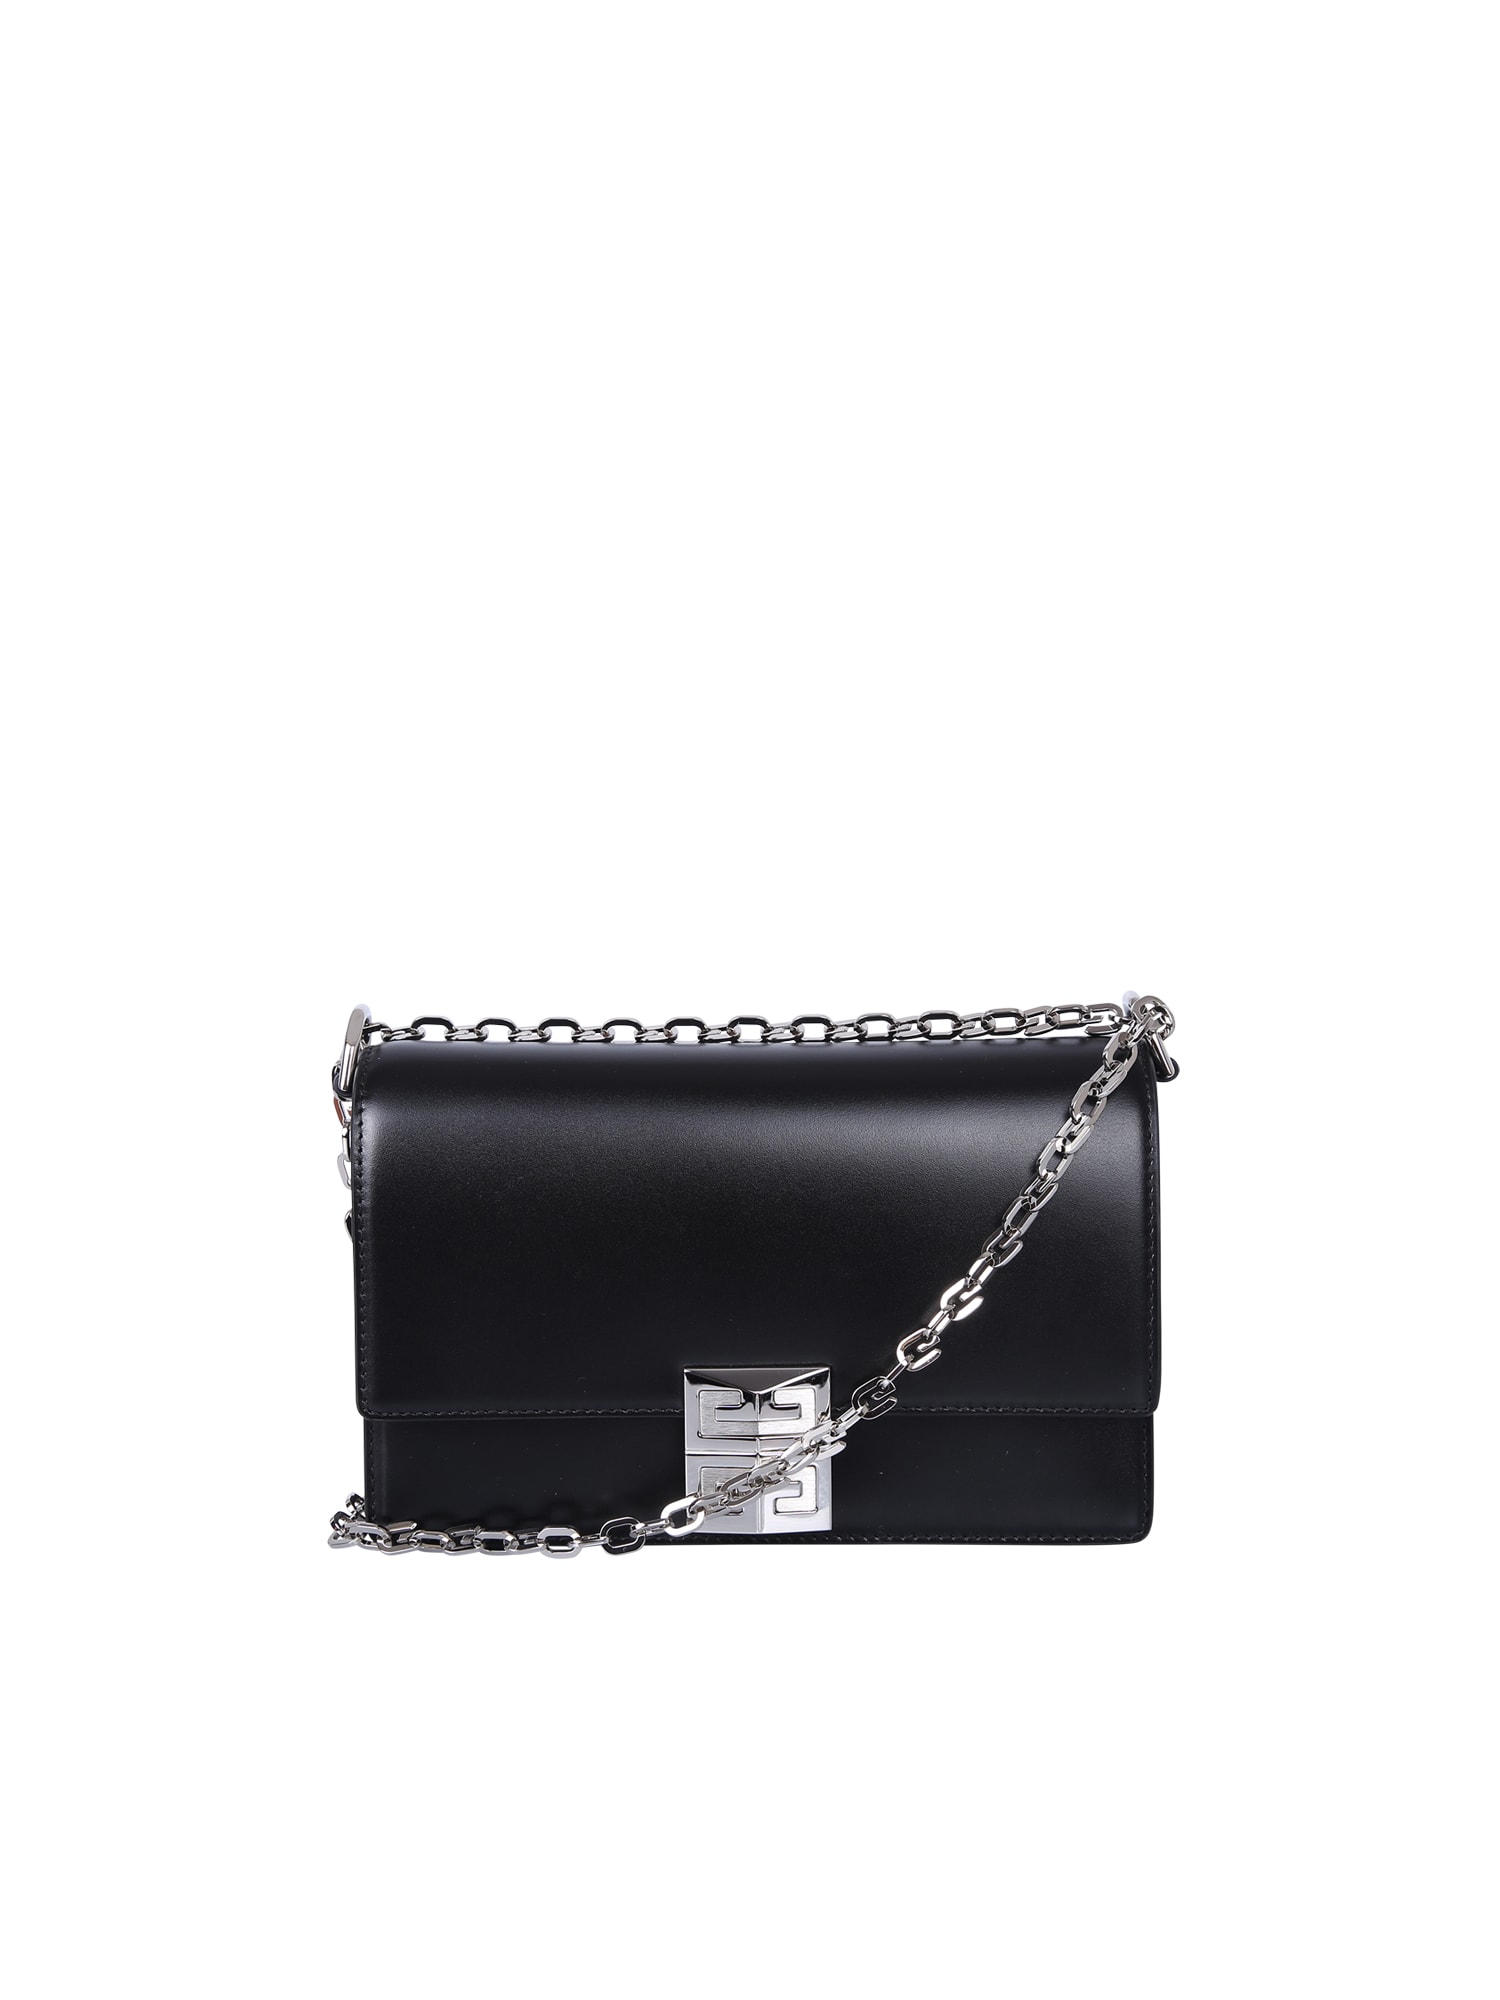 Givenchy Borsa 4g Mini Chain Nero/arg